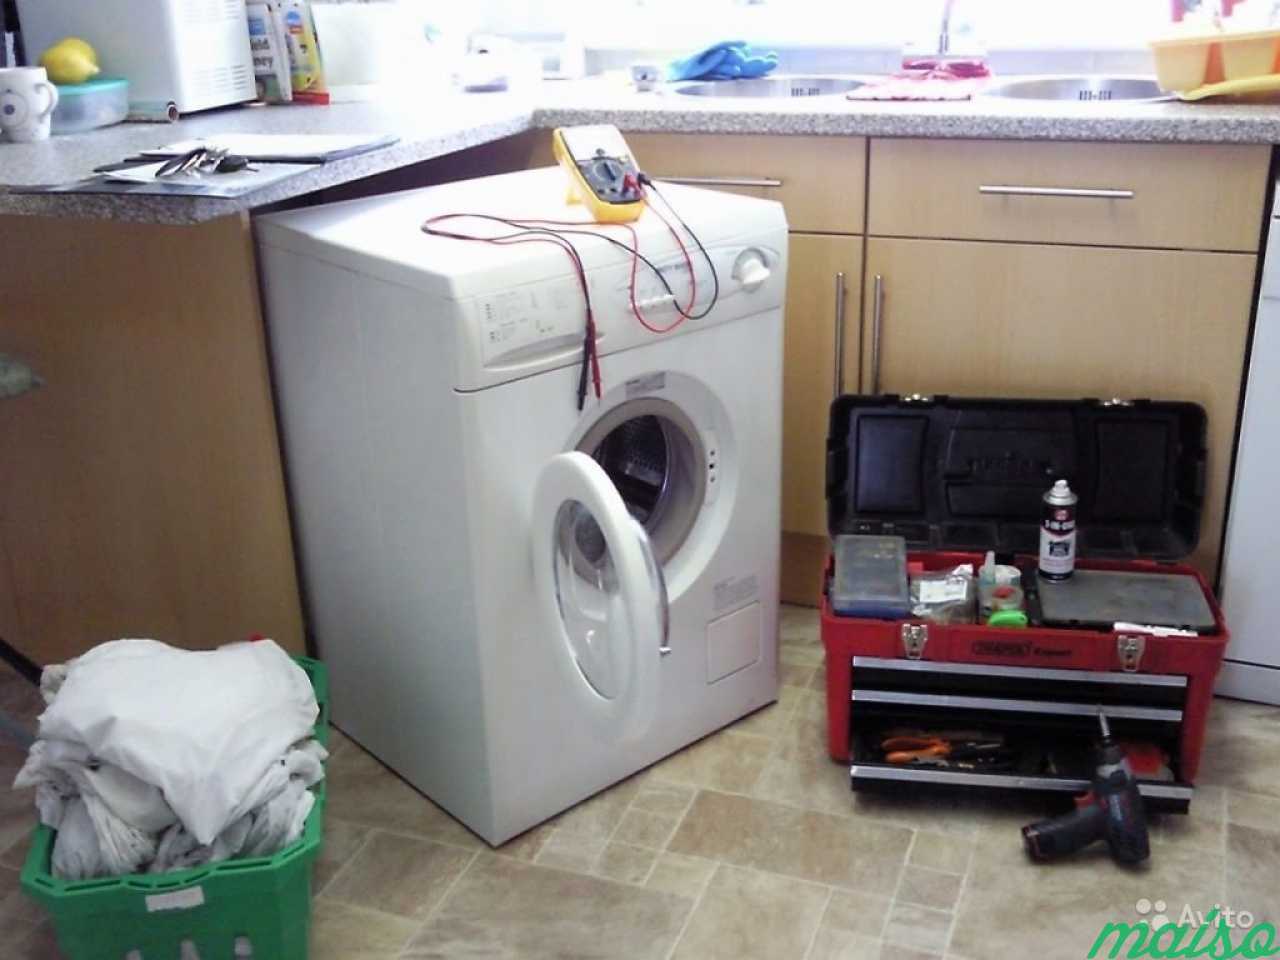 Ремонт стиральных машин в Москве. Фото 1